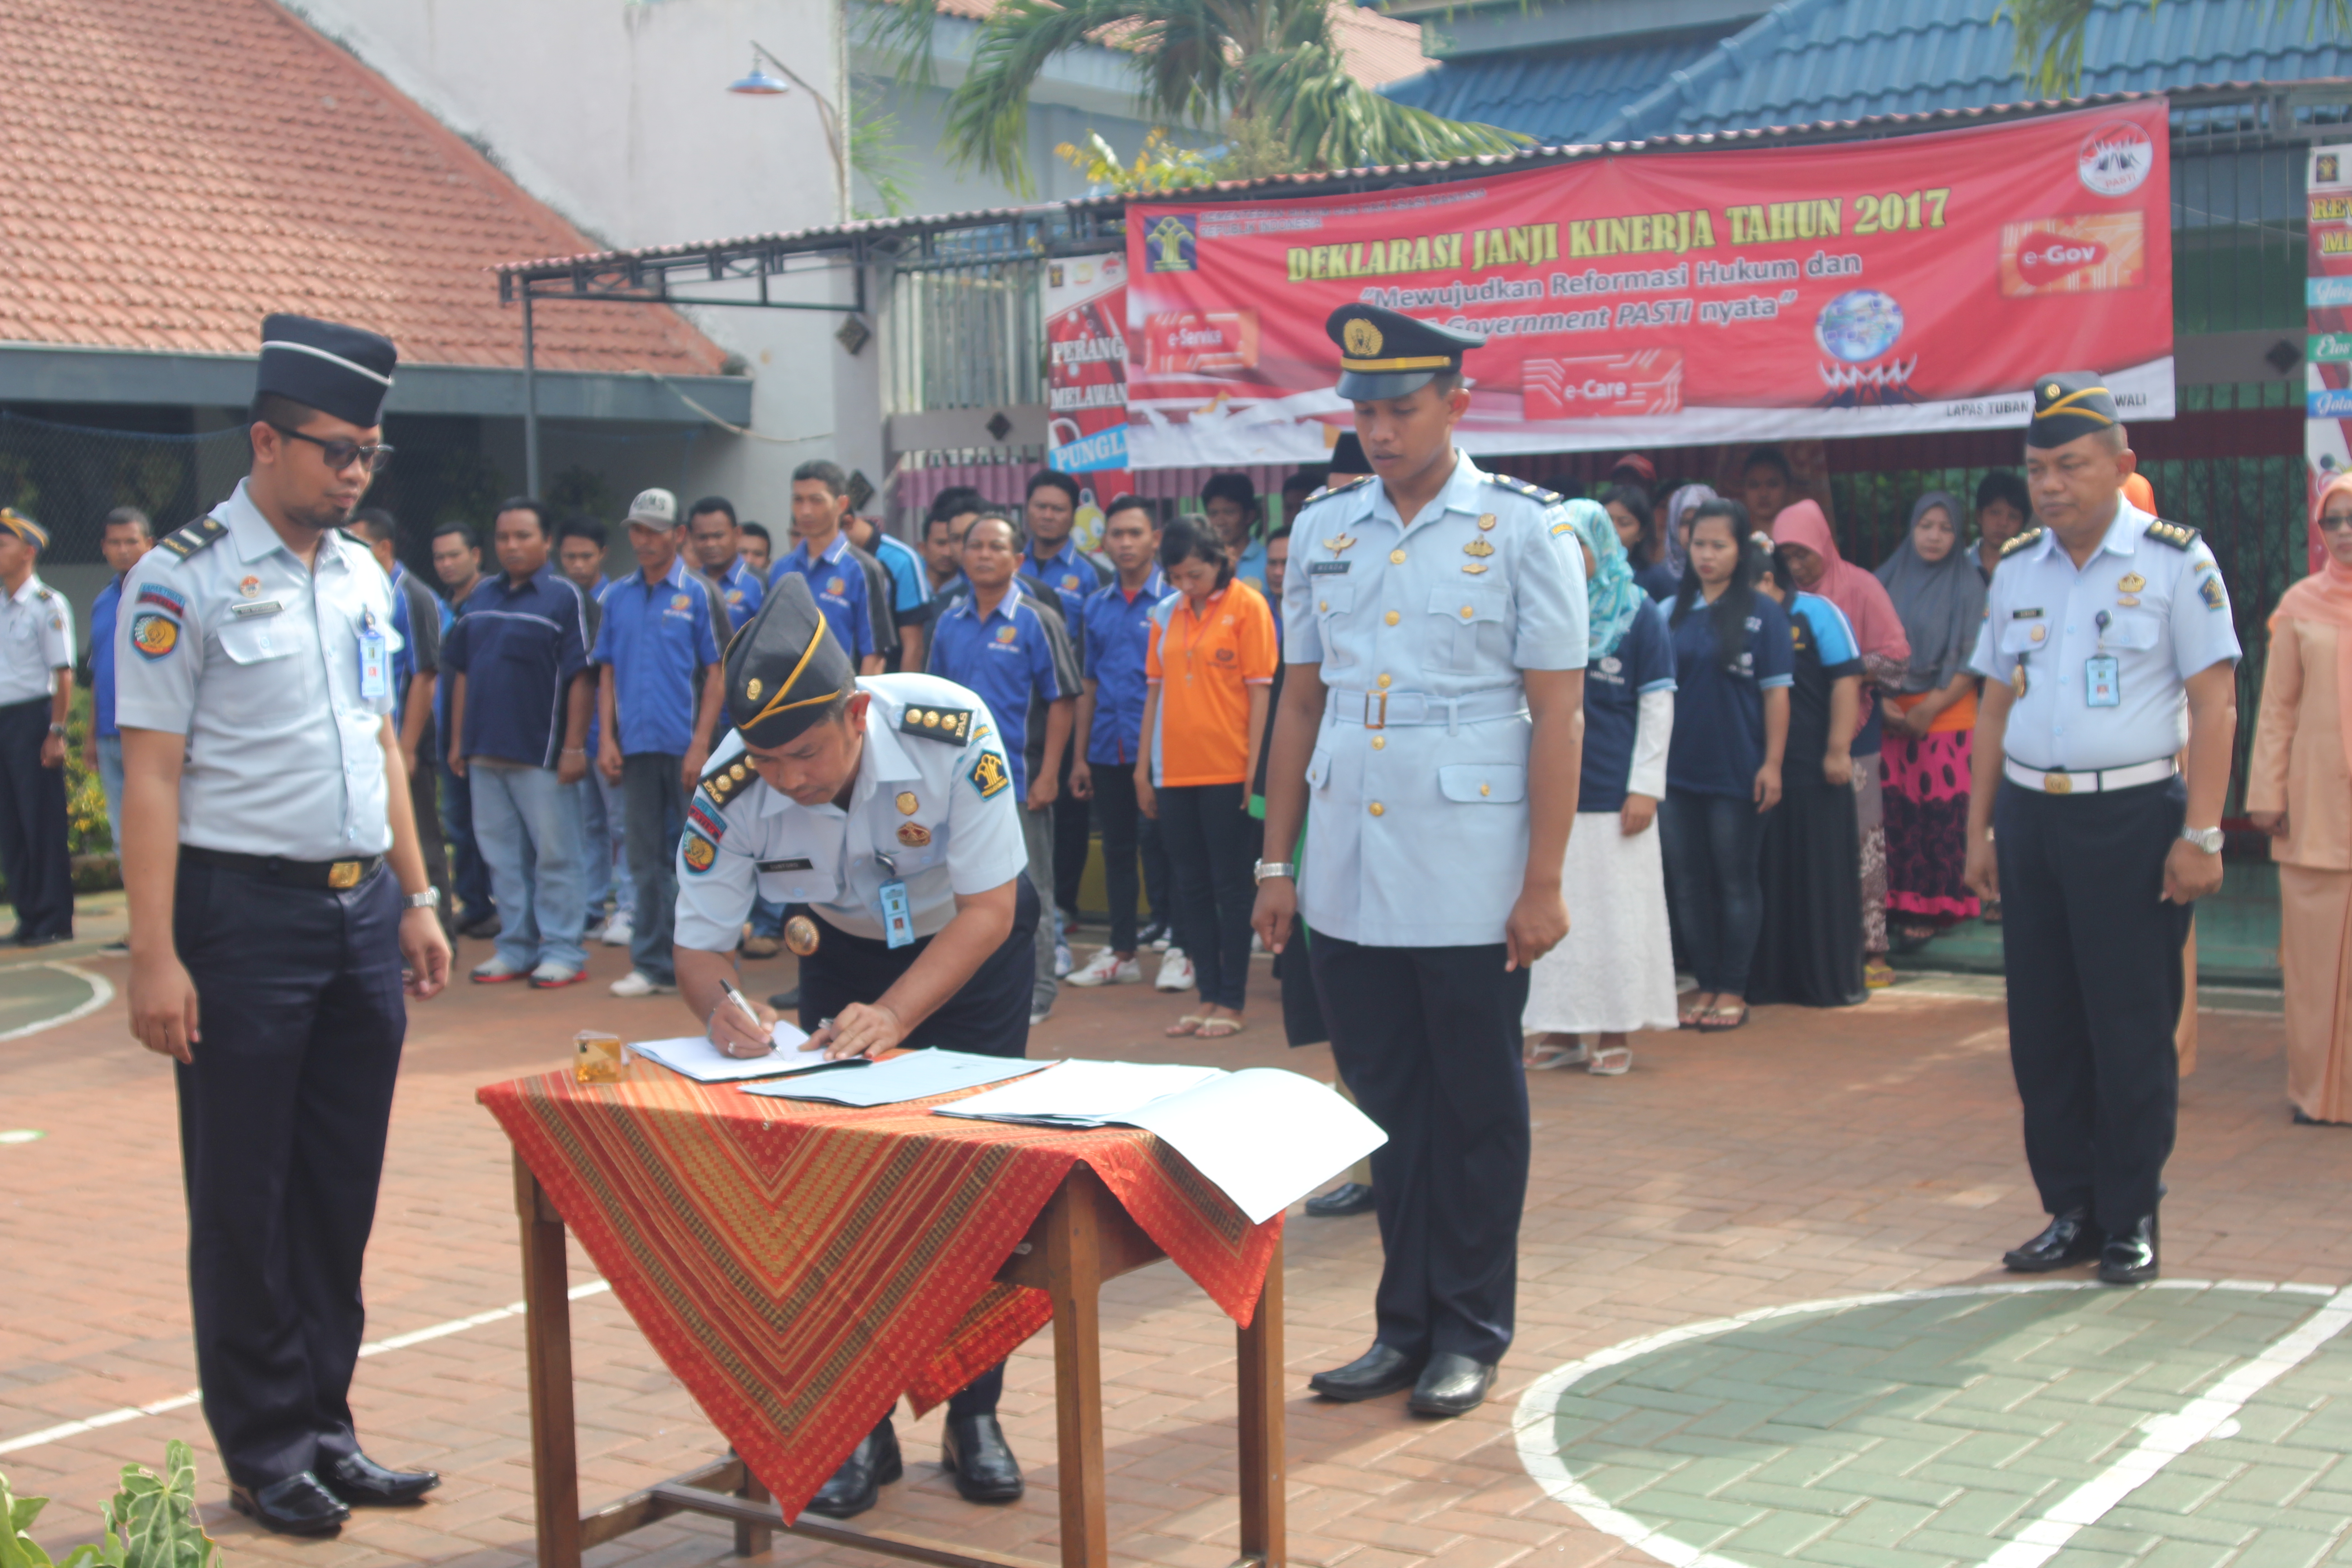 GN/Chusnul Huda  Pelantikan pejabat baru Rutan Kelas IIB Tuban dan penandatanganan Pakta Integritas.